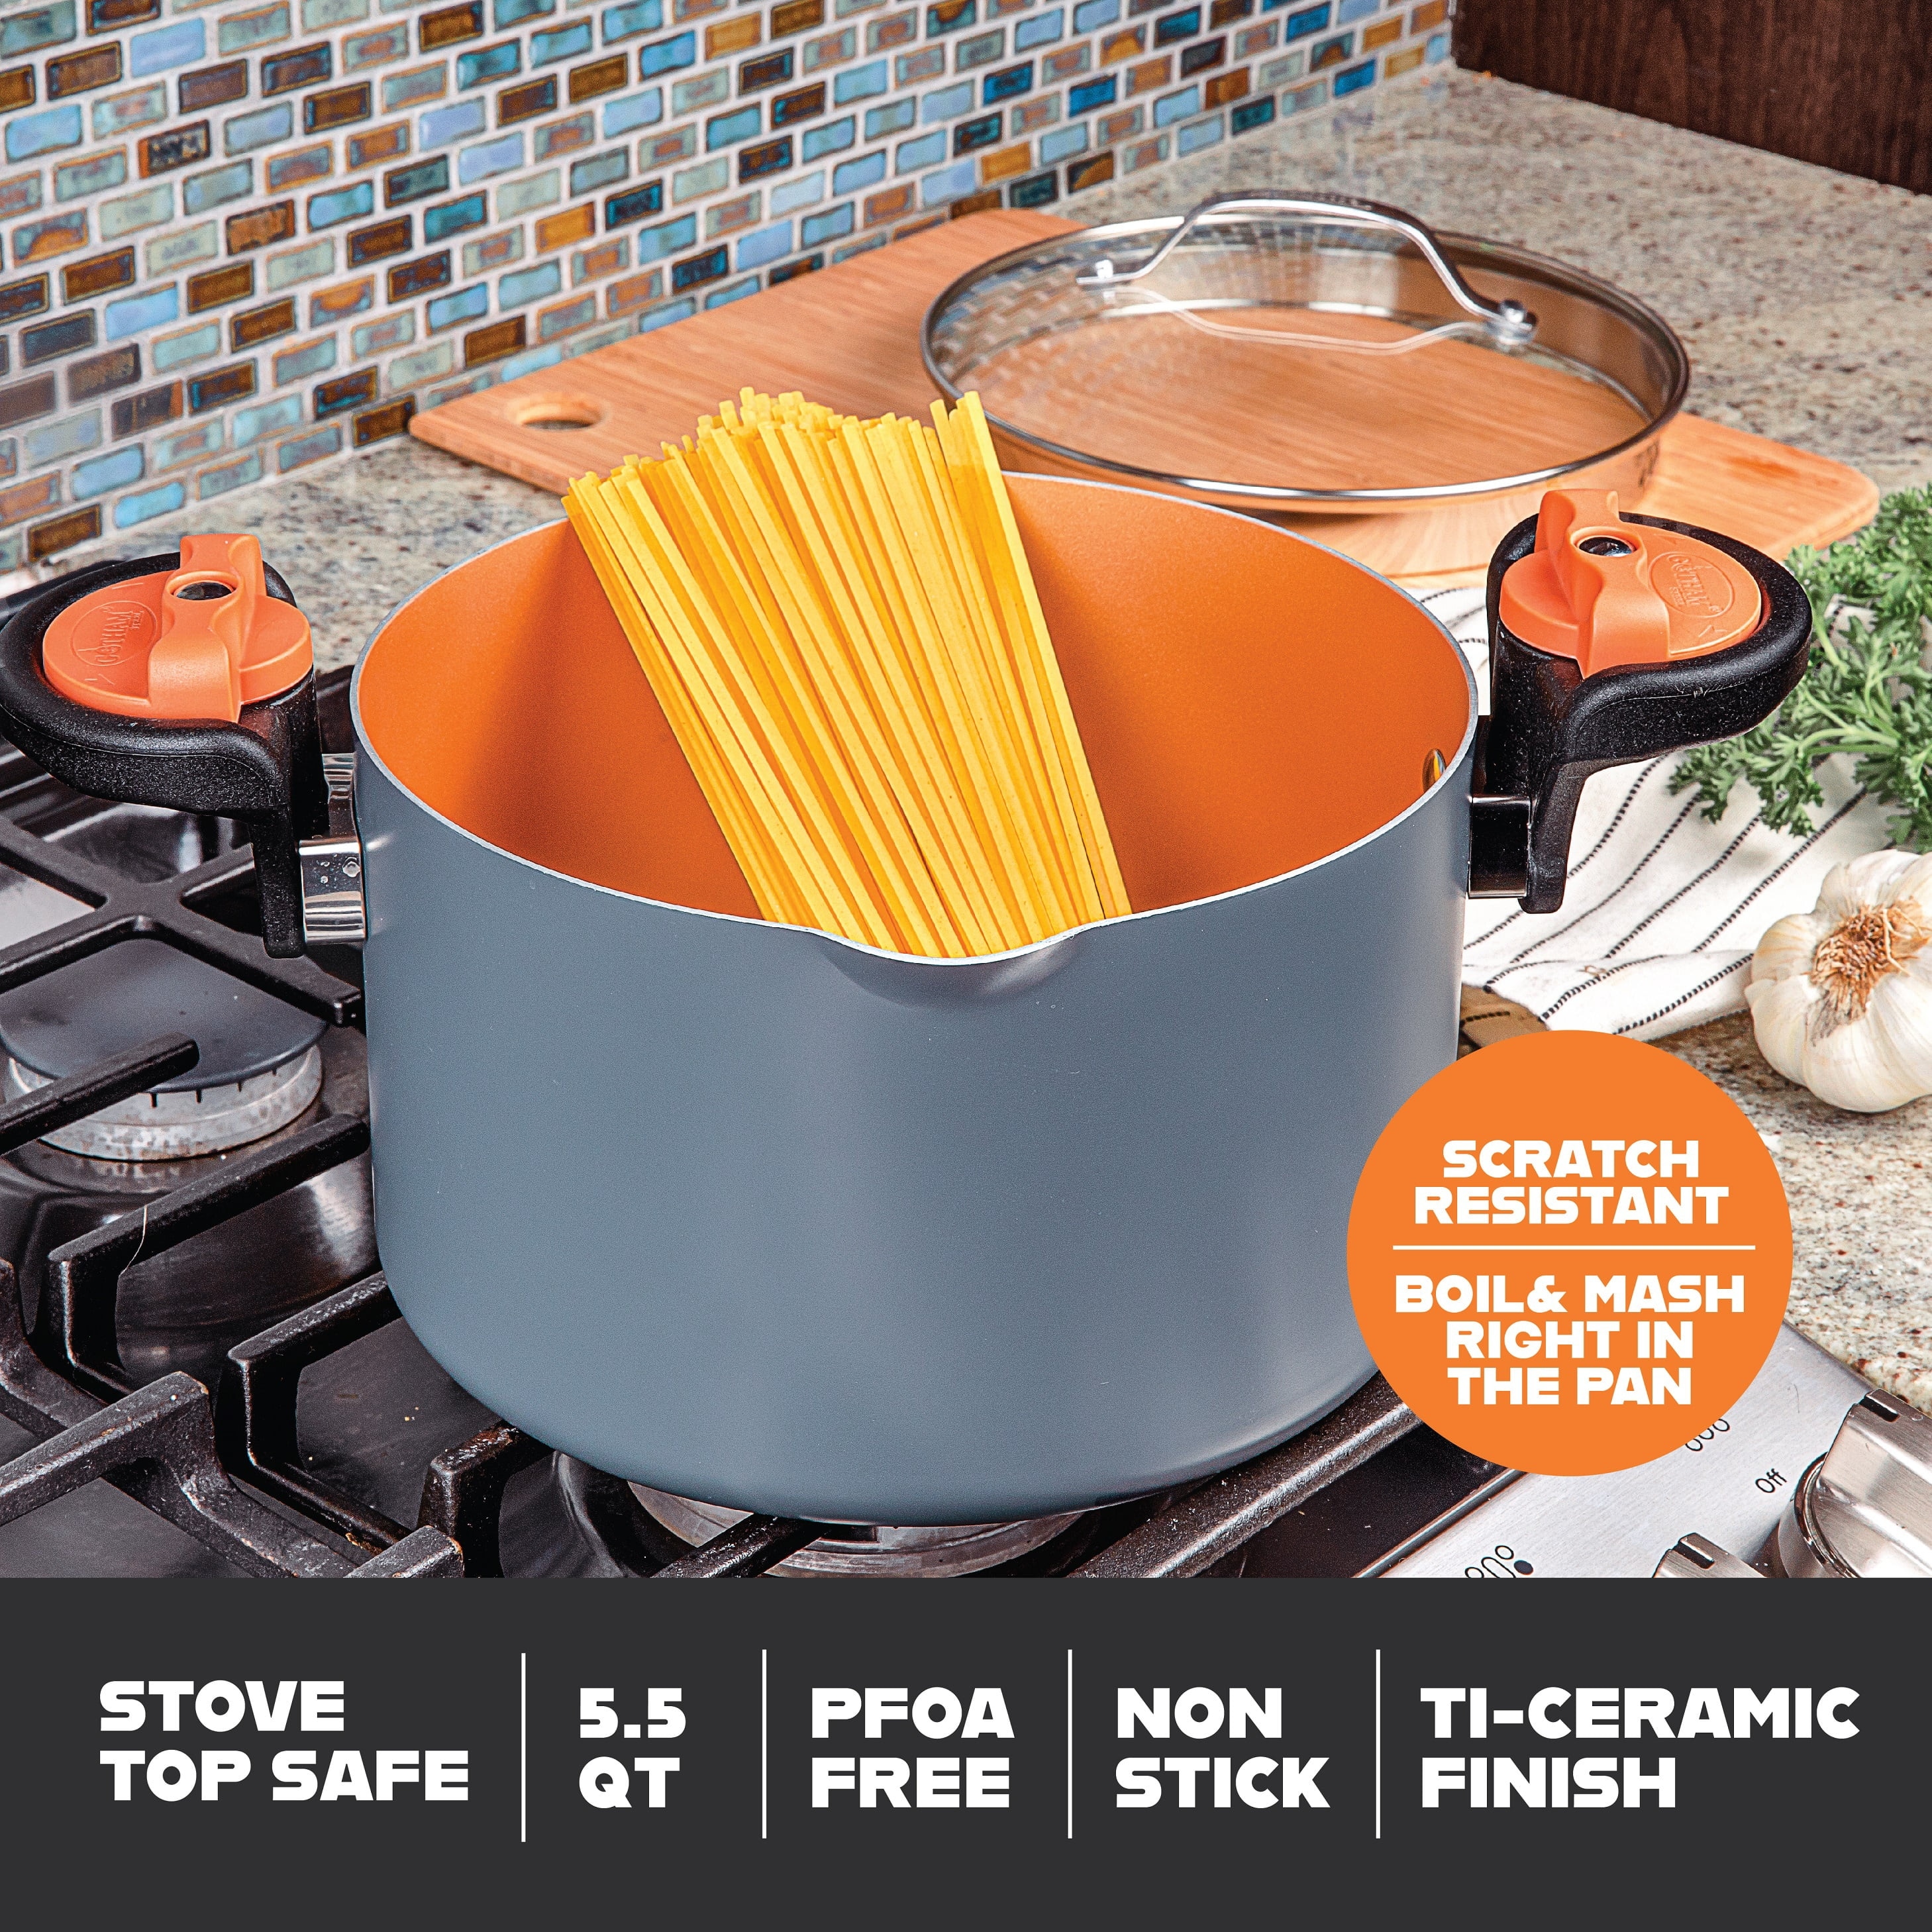  Gotham Steel 5 Quart Stock Multipurpose Pasta Pot with